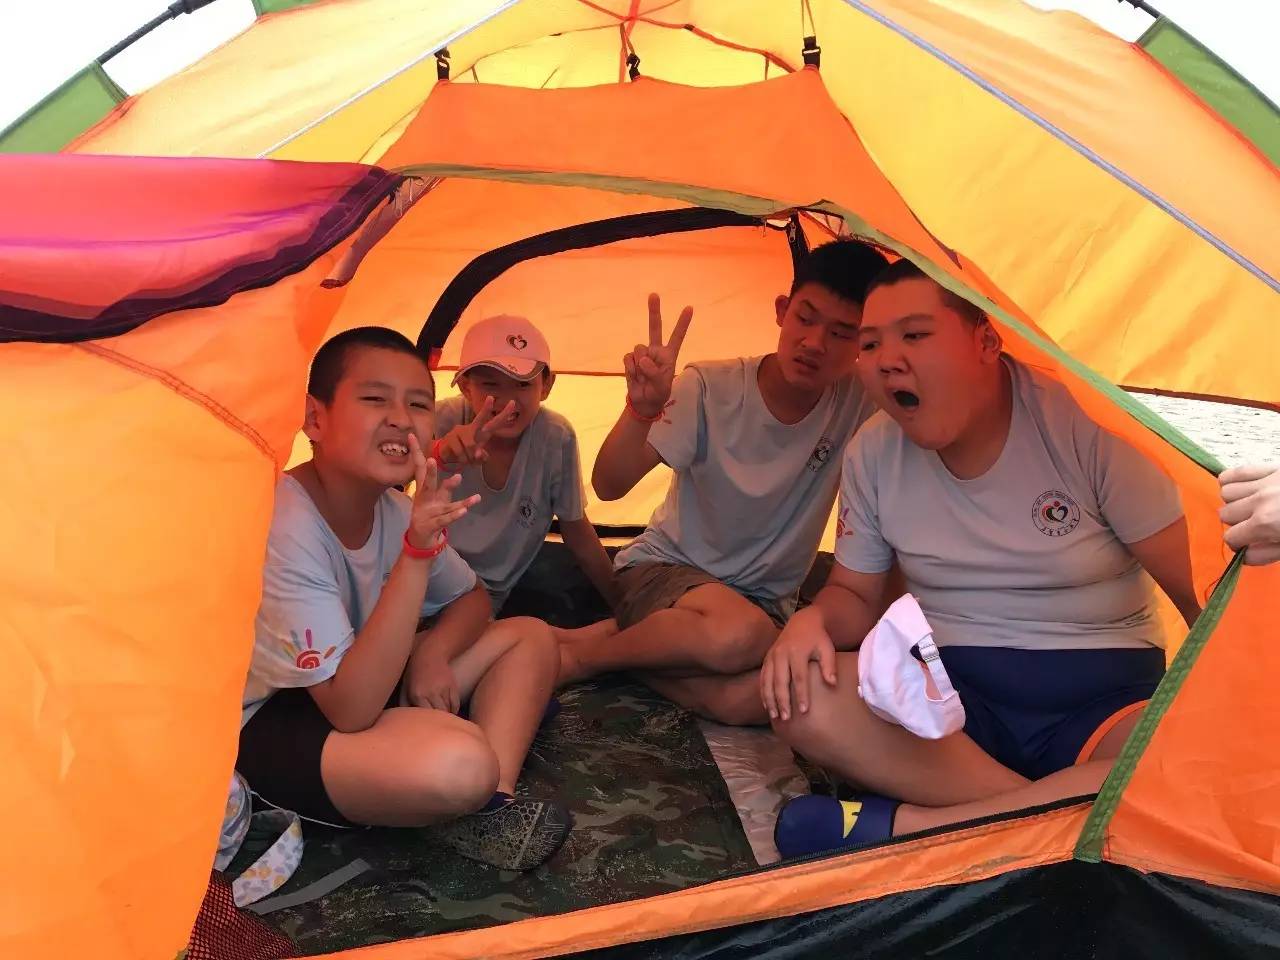 魅力威海61生存技能训练夏令营—搭帐篷,捡贝壳大比拼